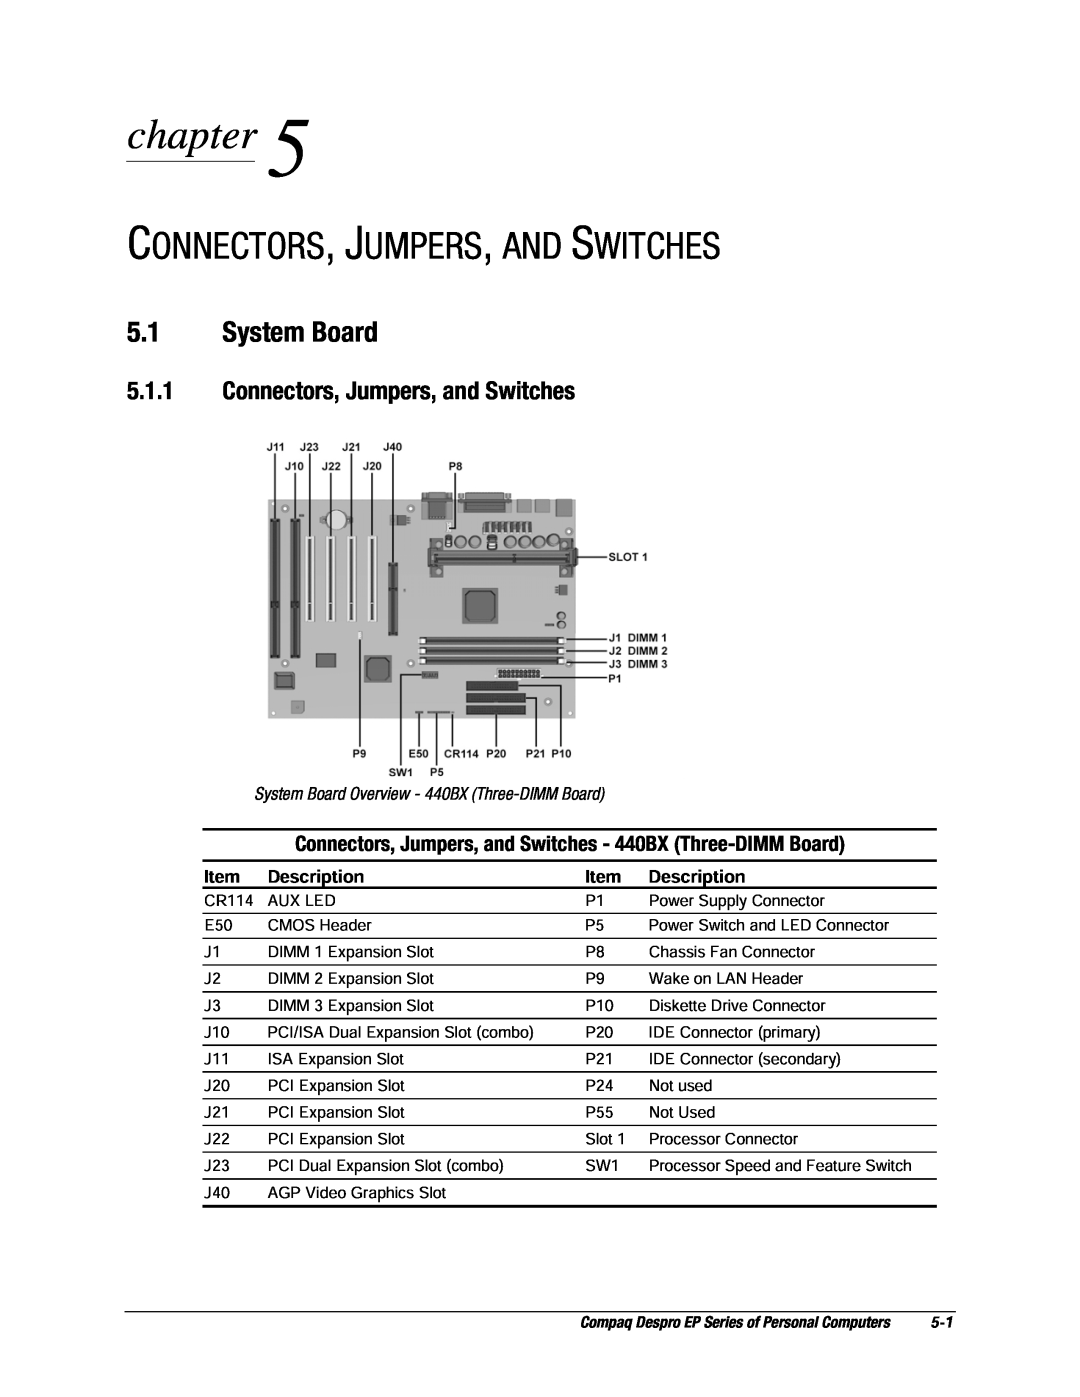 Compaq EP Series Connectors, Jumpers, And Switches, System Board, Connectors, Jumpers, and Switches, chapter, Description 